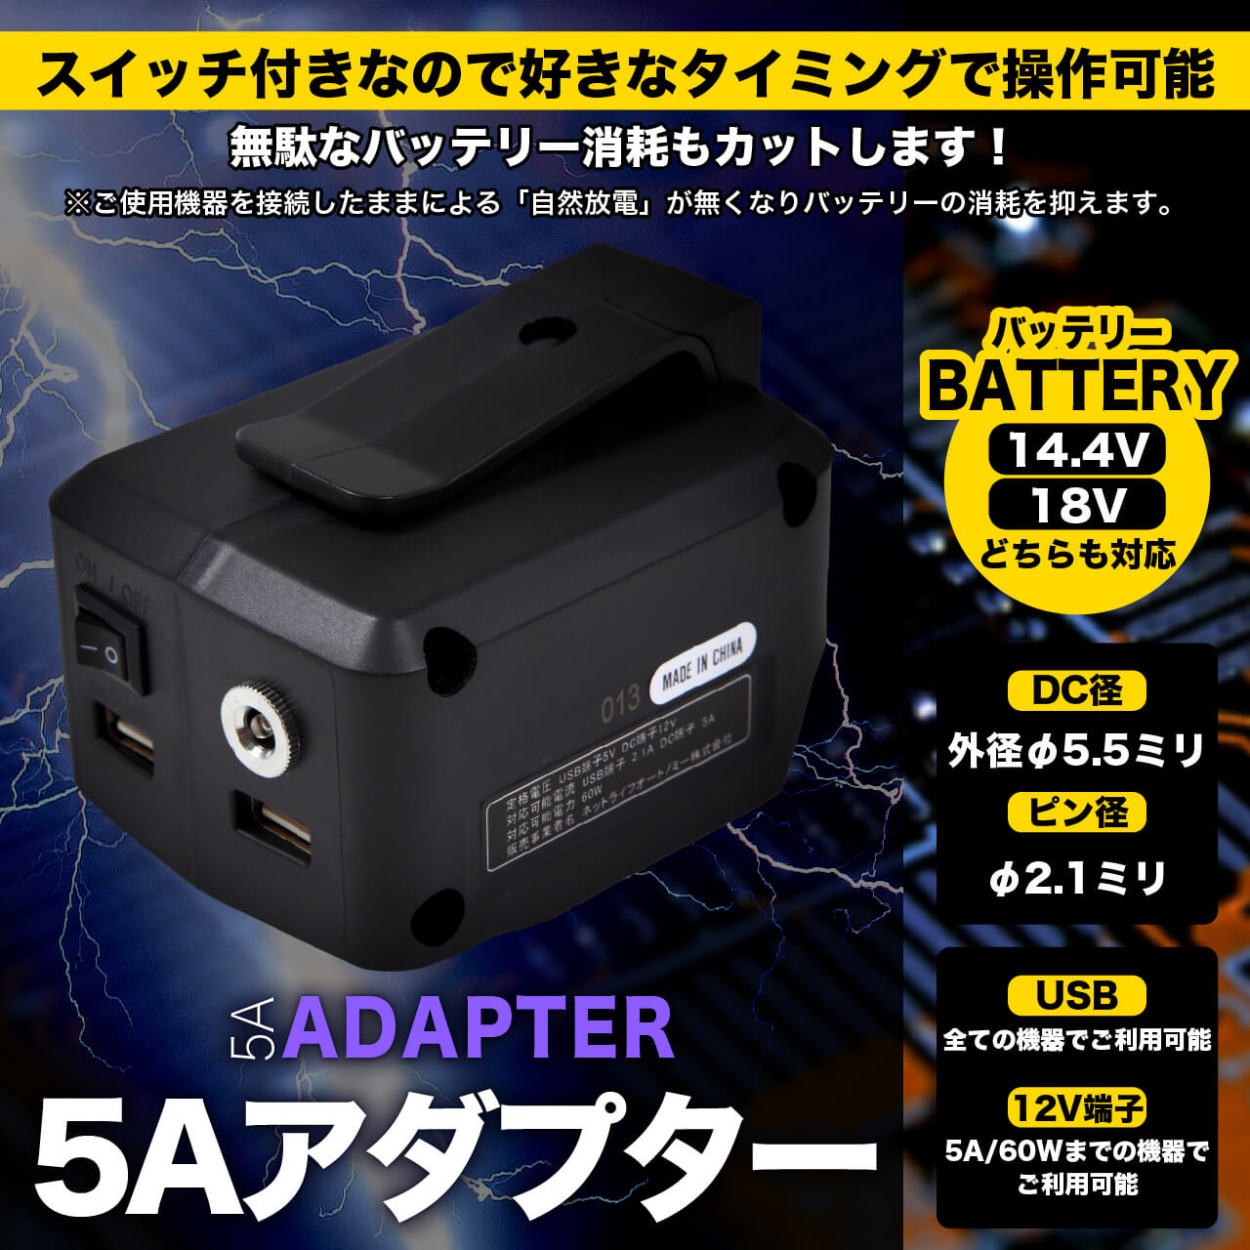 ADP05互換 USBアダプター 12V出力搭載 5A対応 スイッチ搭載 100v出力転用可 14.4v 18v対応  :XN-M7M2-VP0G:LED作業照明・NLAセレクト 通販 